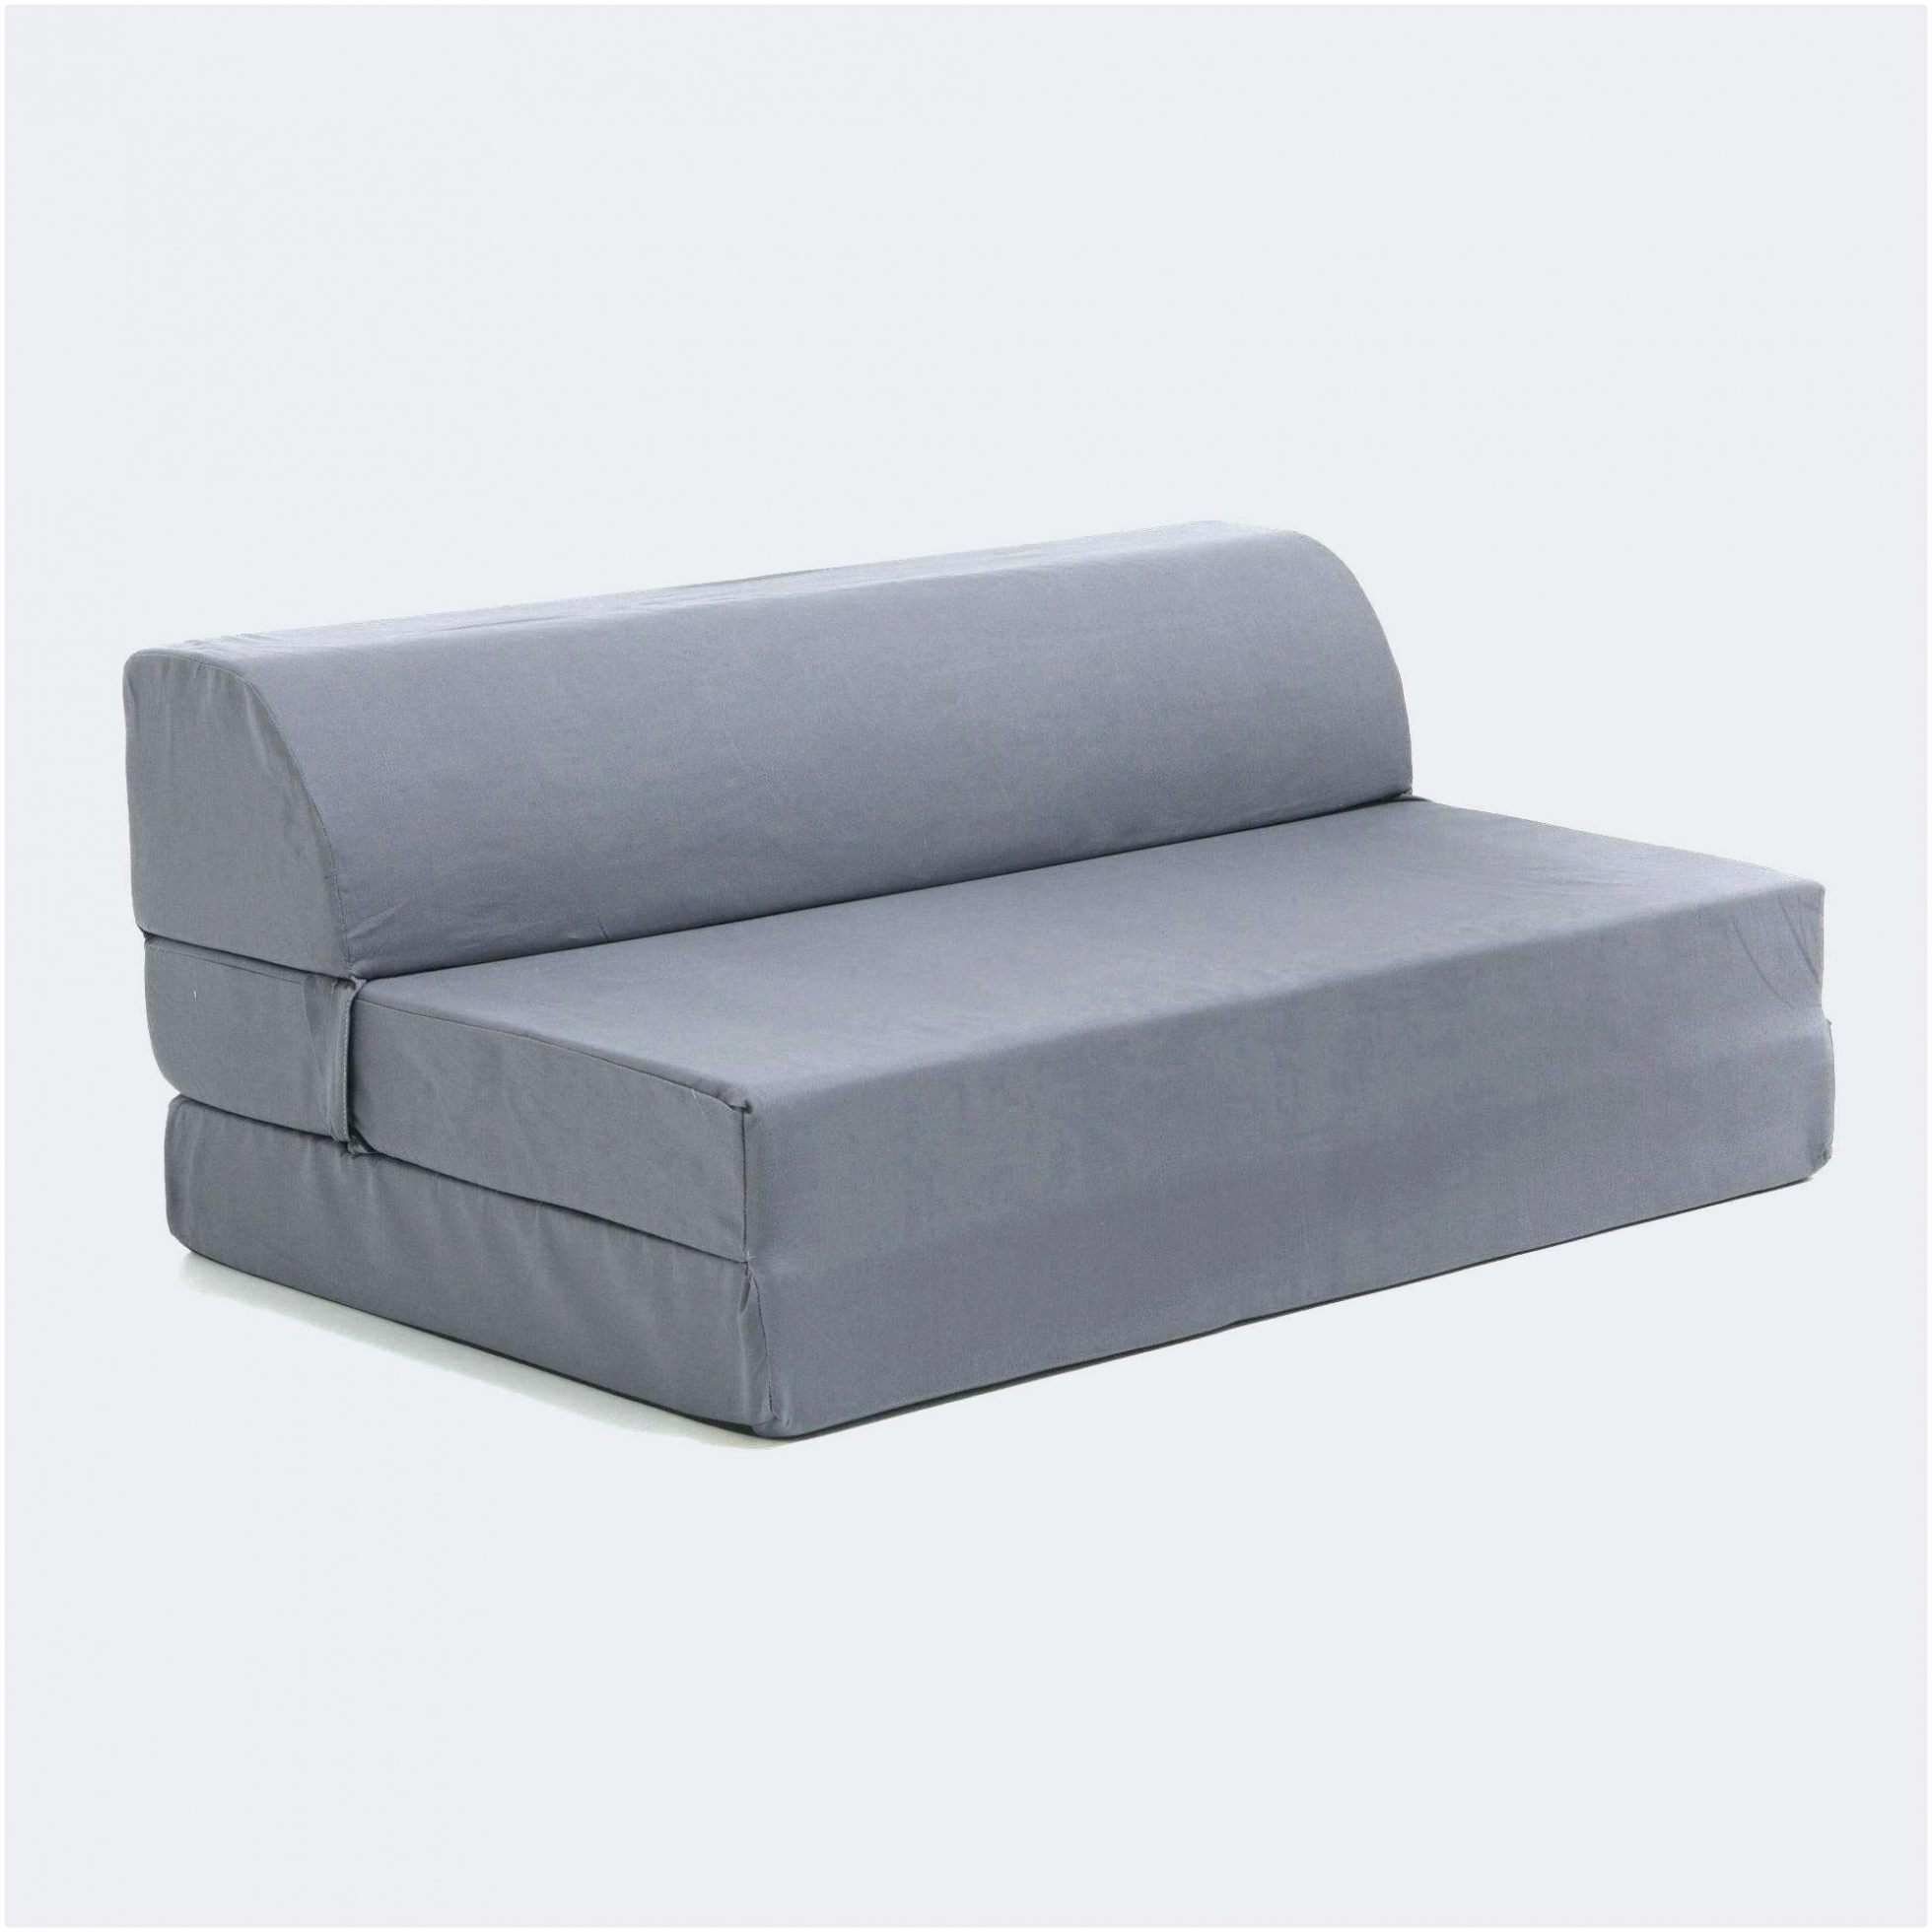 Lit Futon 160×200 Unique sofa Le Meilleur De Lit 160 X 200 Belle Bett Holz 180—200 Exquisit